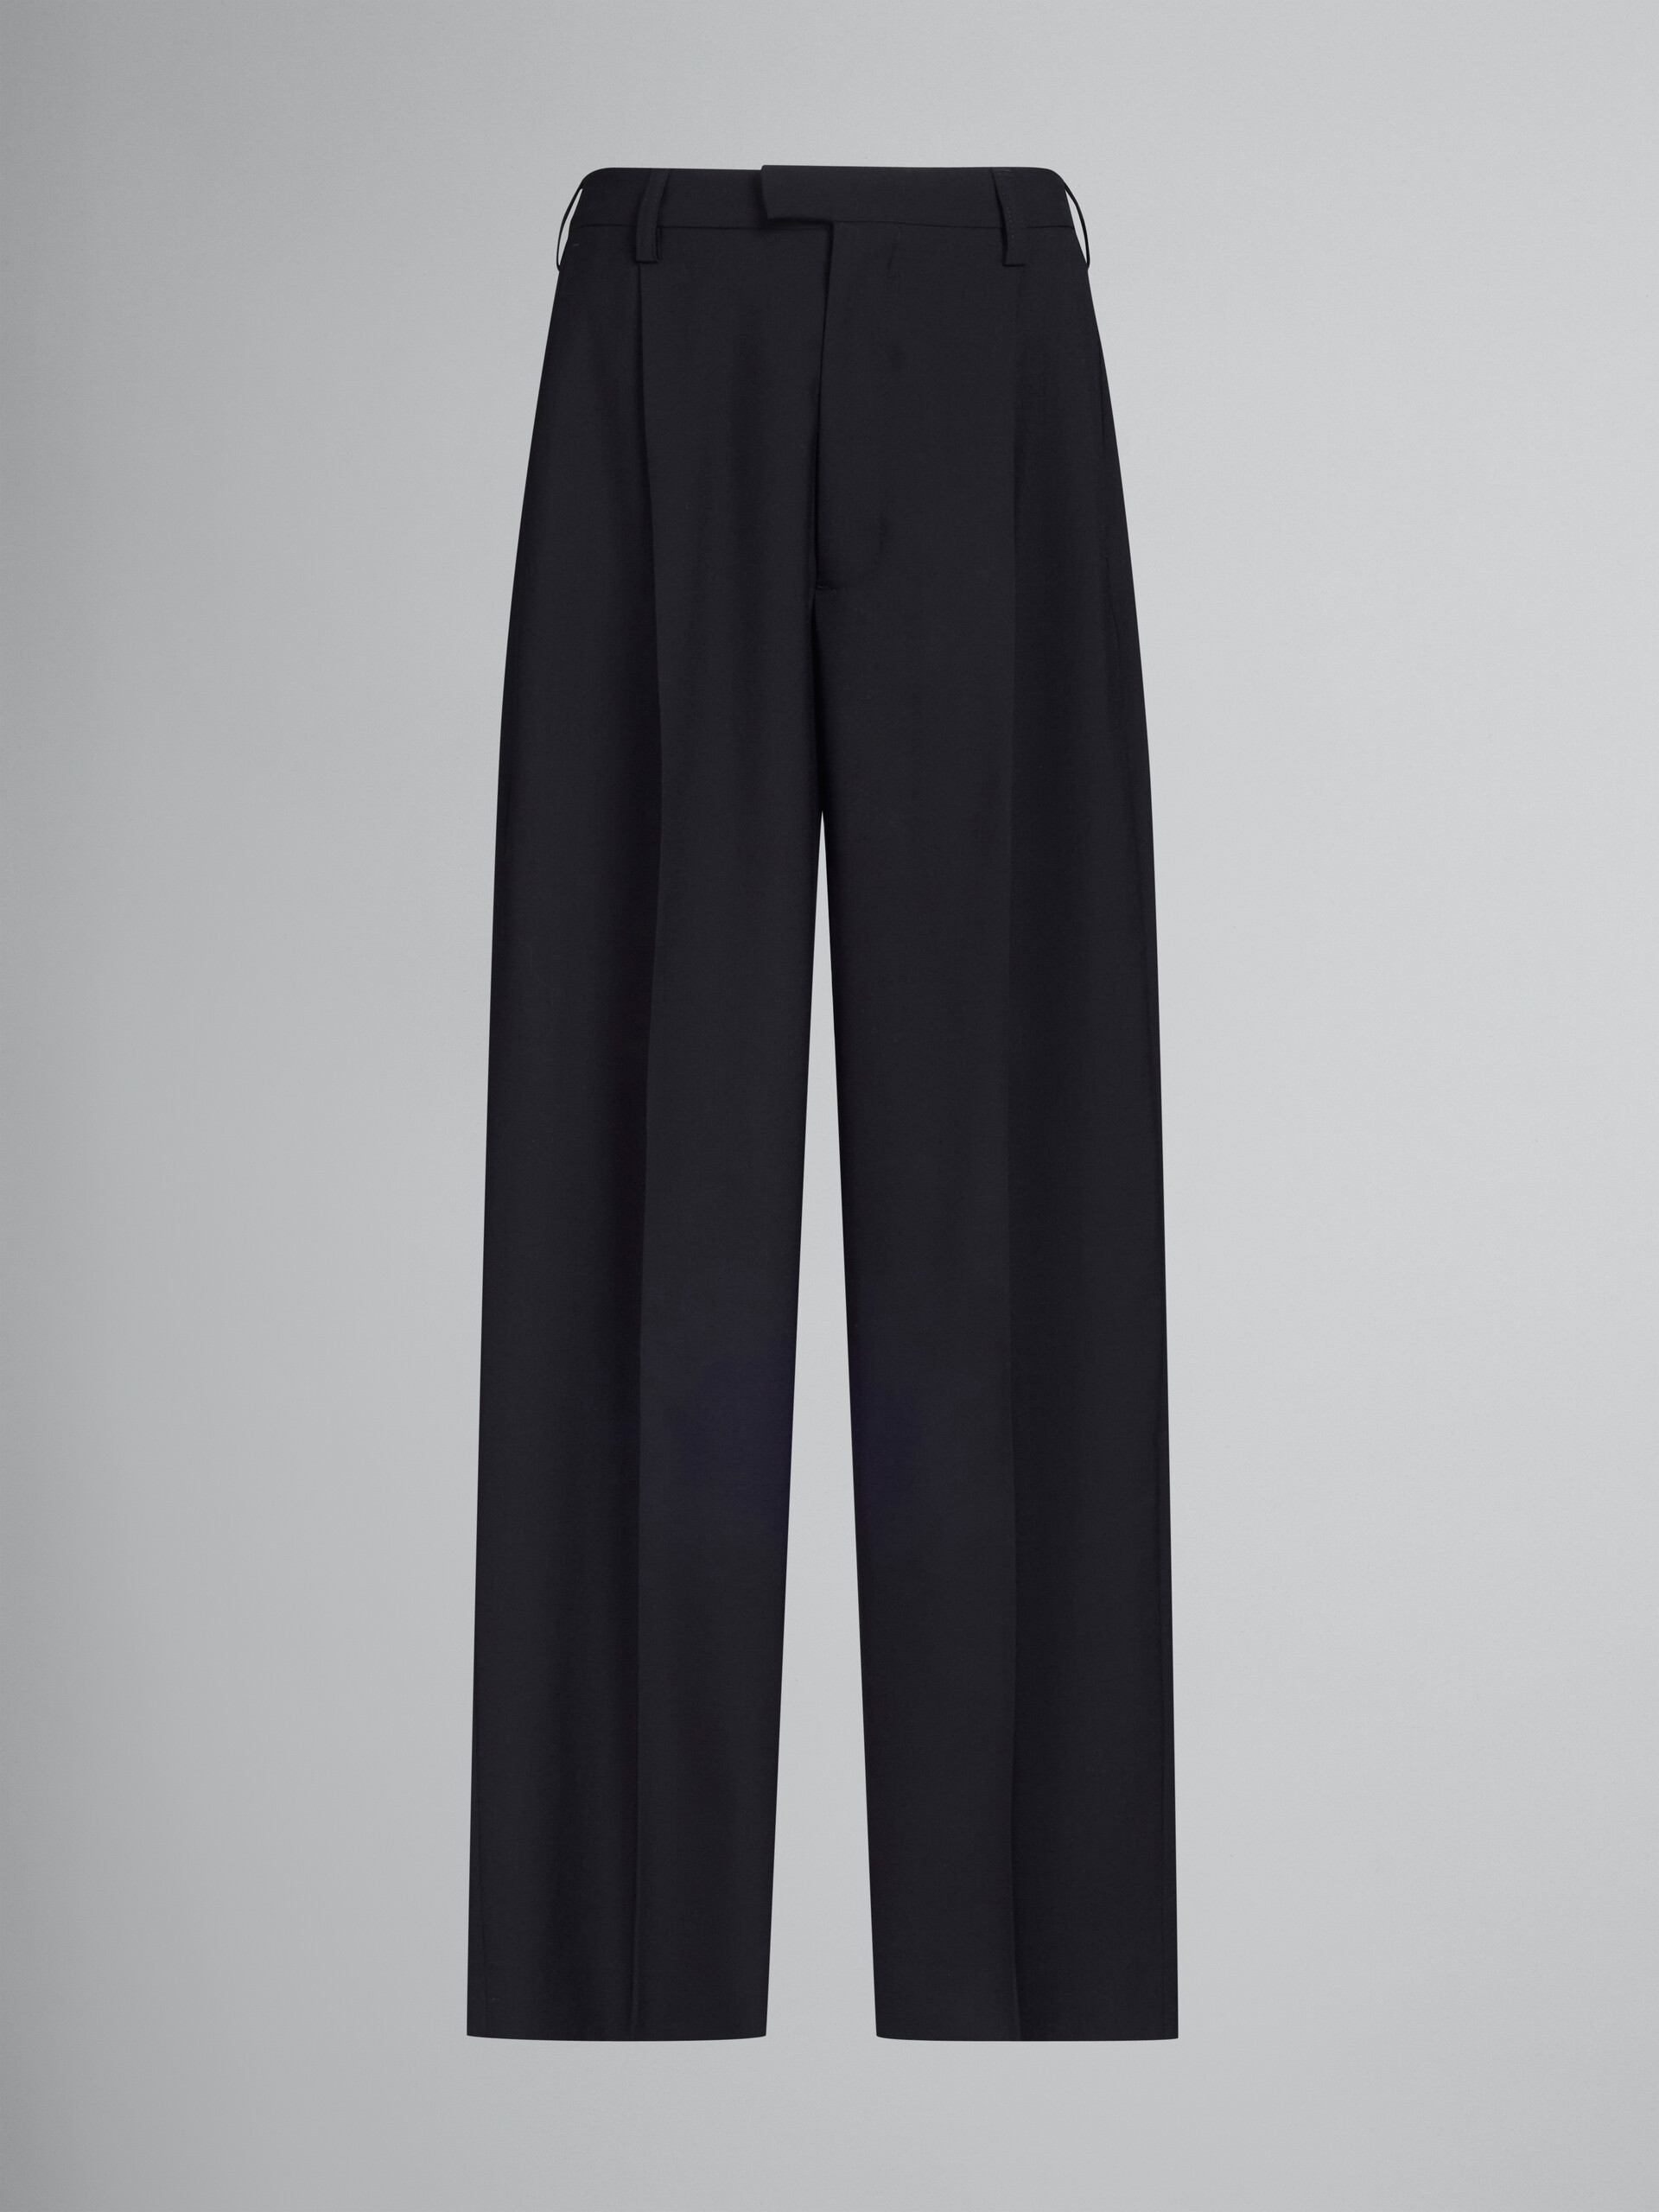 Pantalón de sastre negro de lana tropical - Pantalones - Image 1